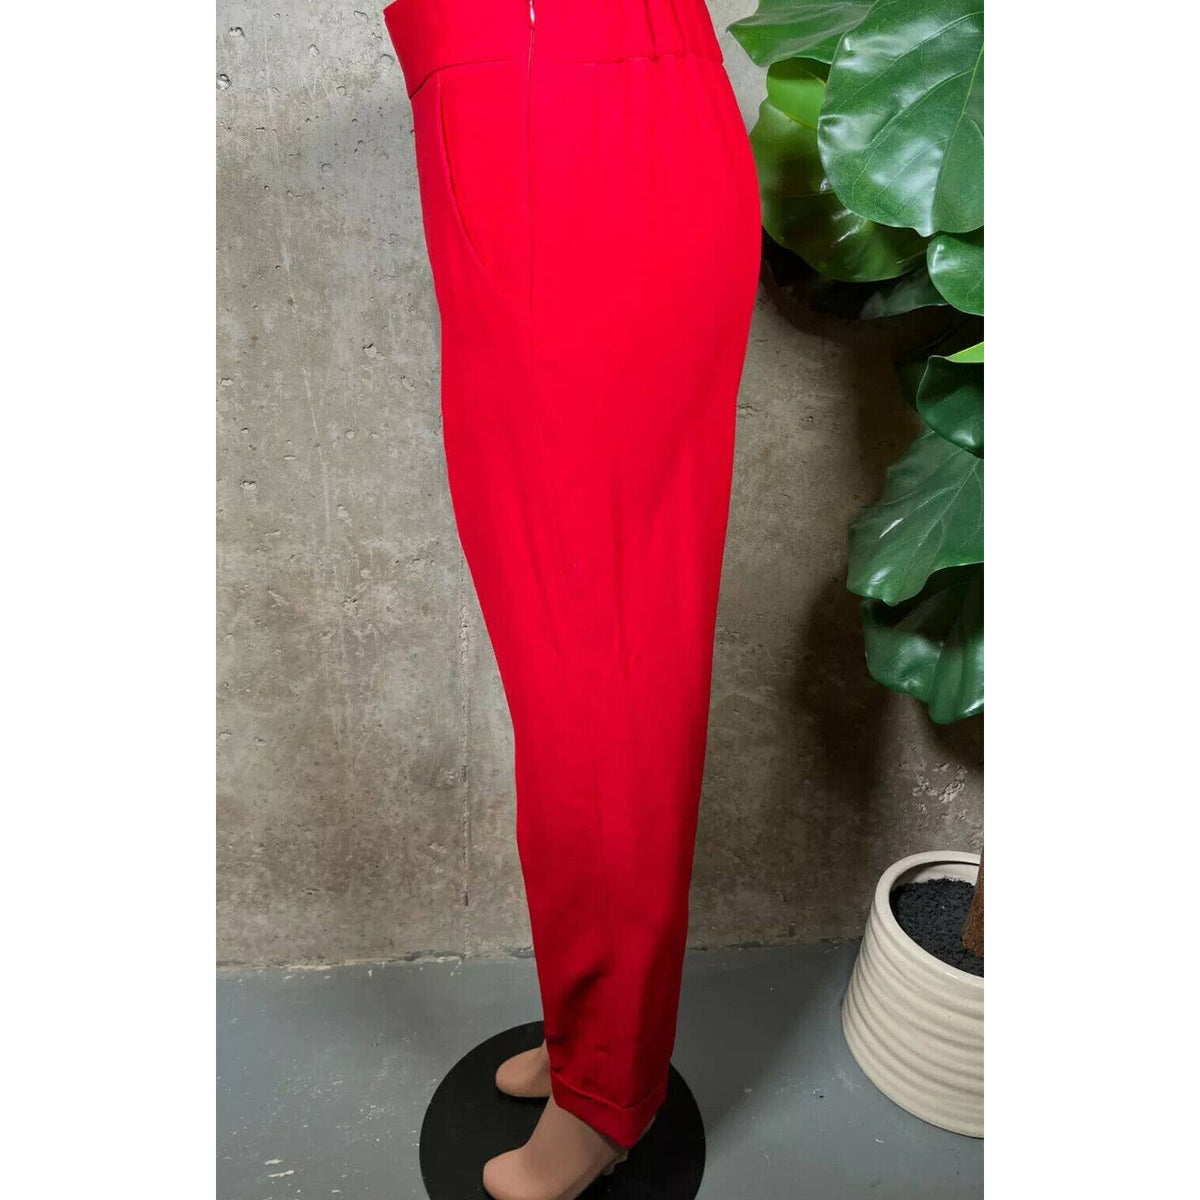 Akris Red Dress Pants Sz. 6 Size:6